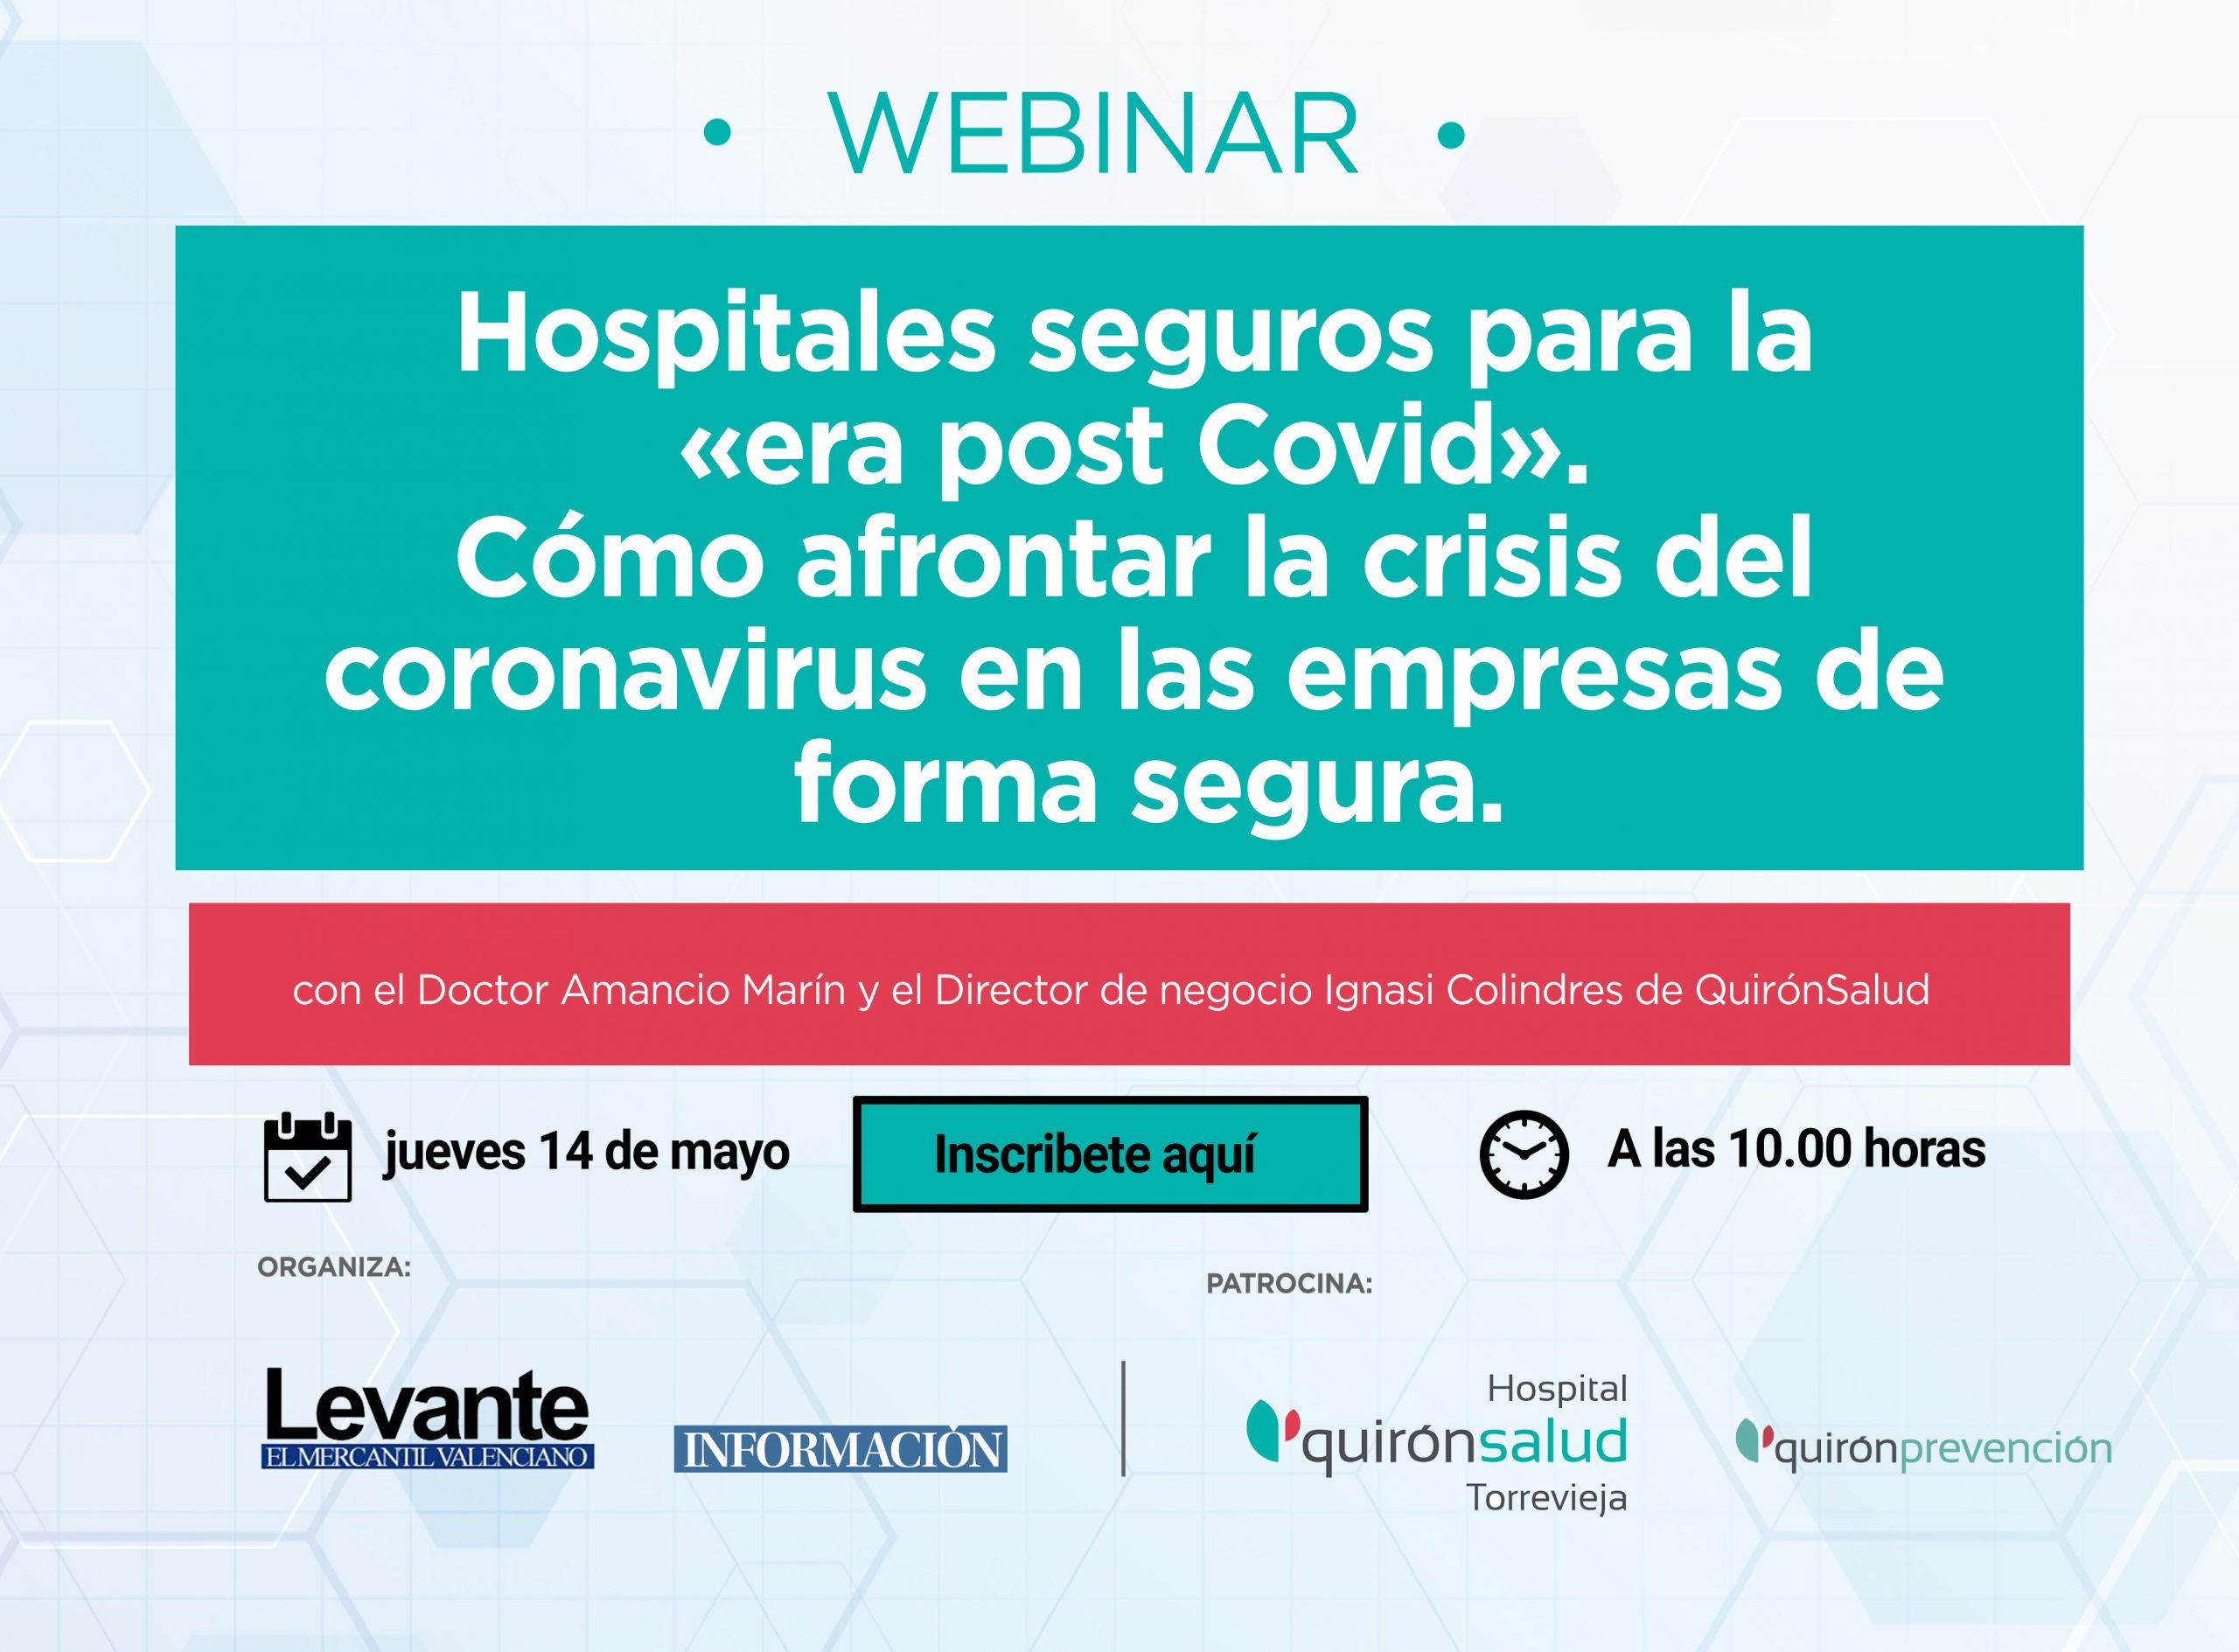 “Hospitales seguros para la era post Covid» y cómo afrontar la crisis del coronavirus en las empresas de forma segura”.